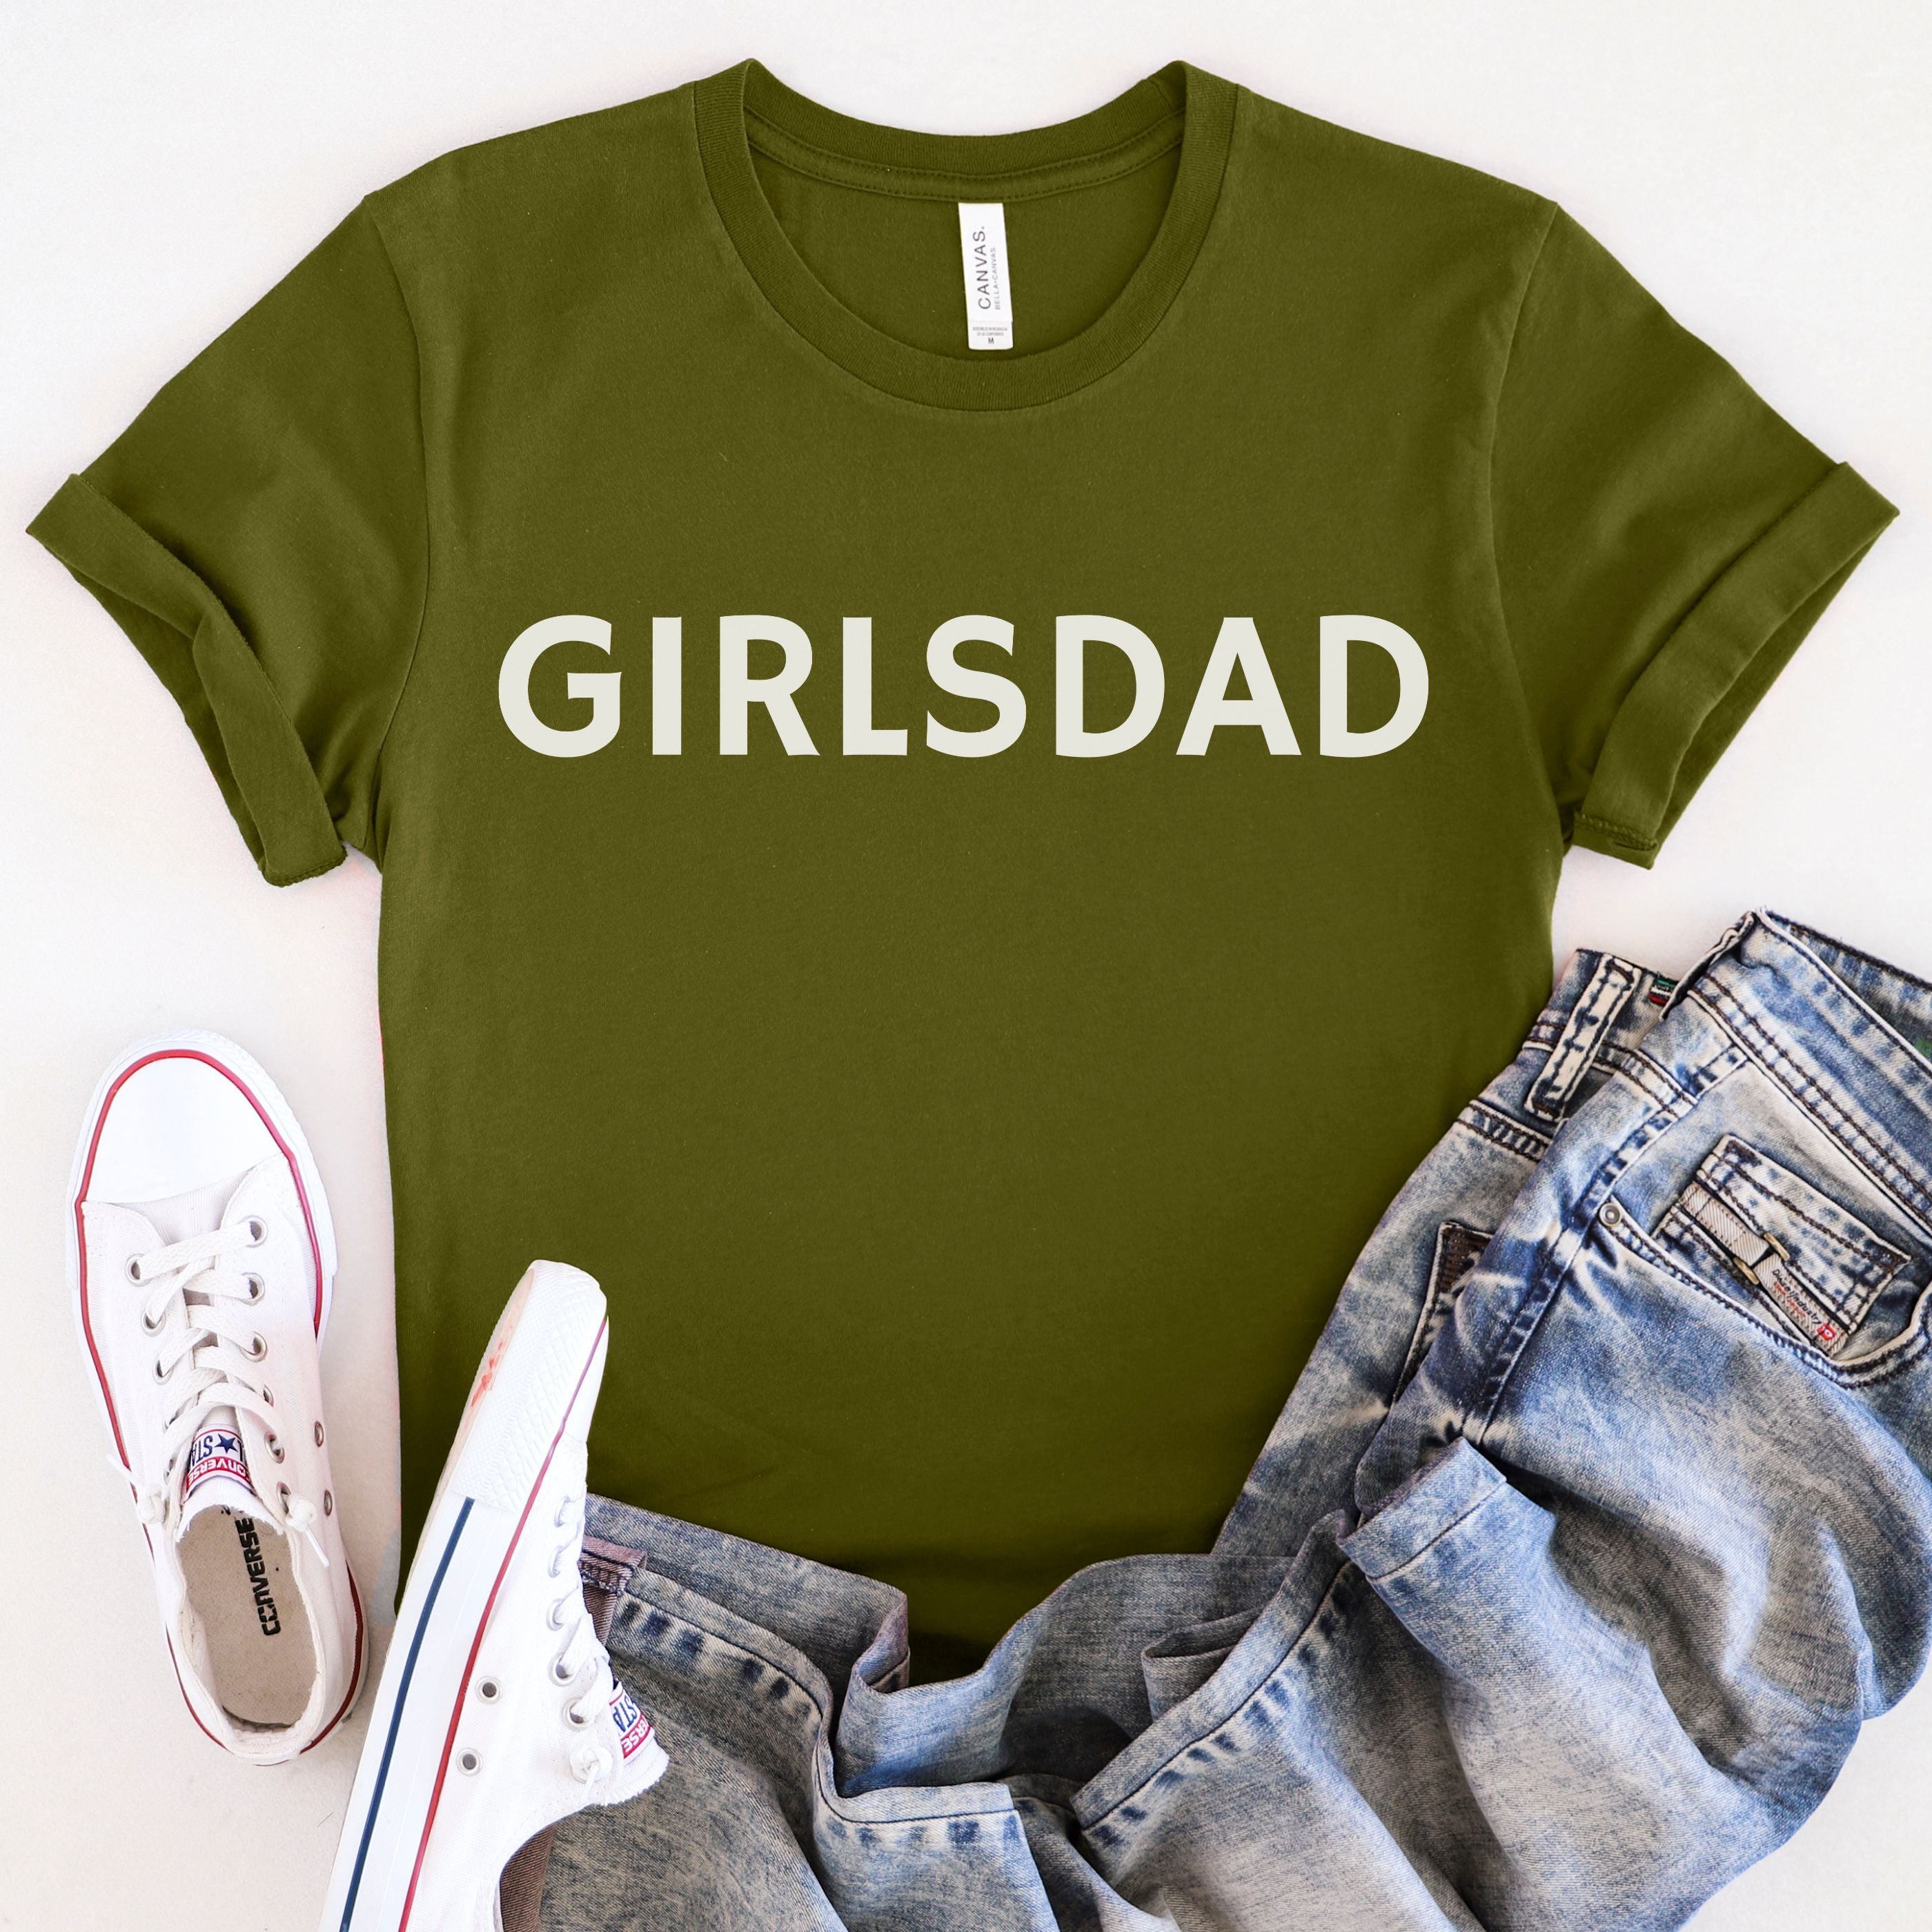 Girls Dad T-shirt